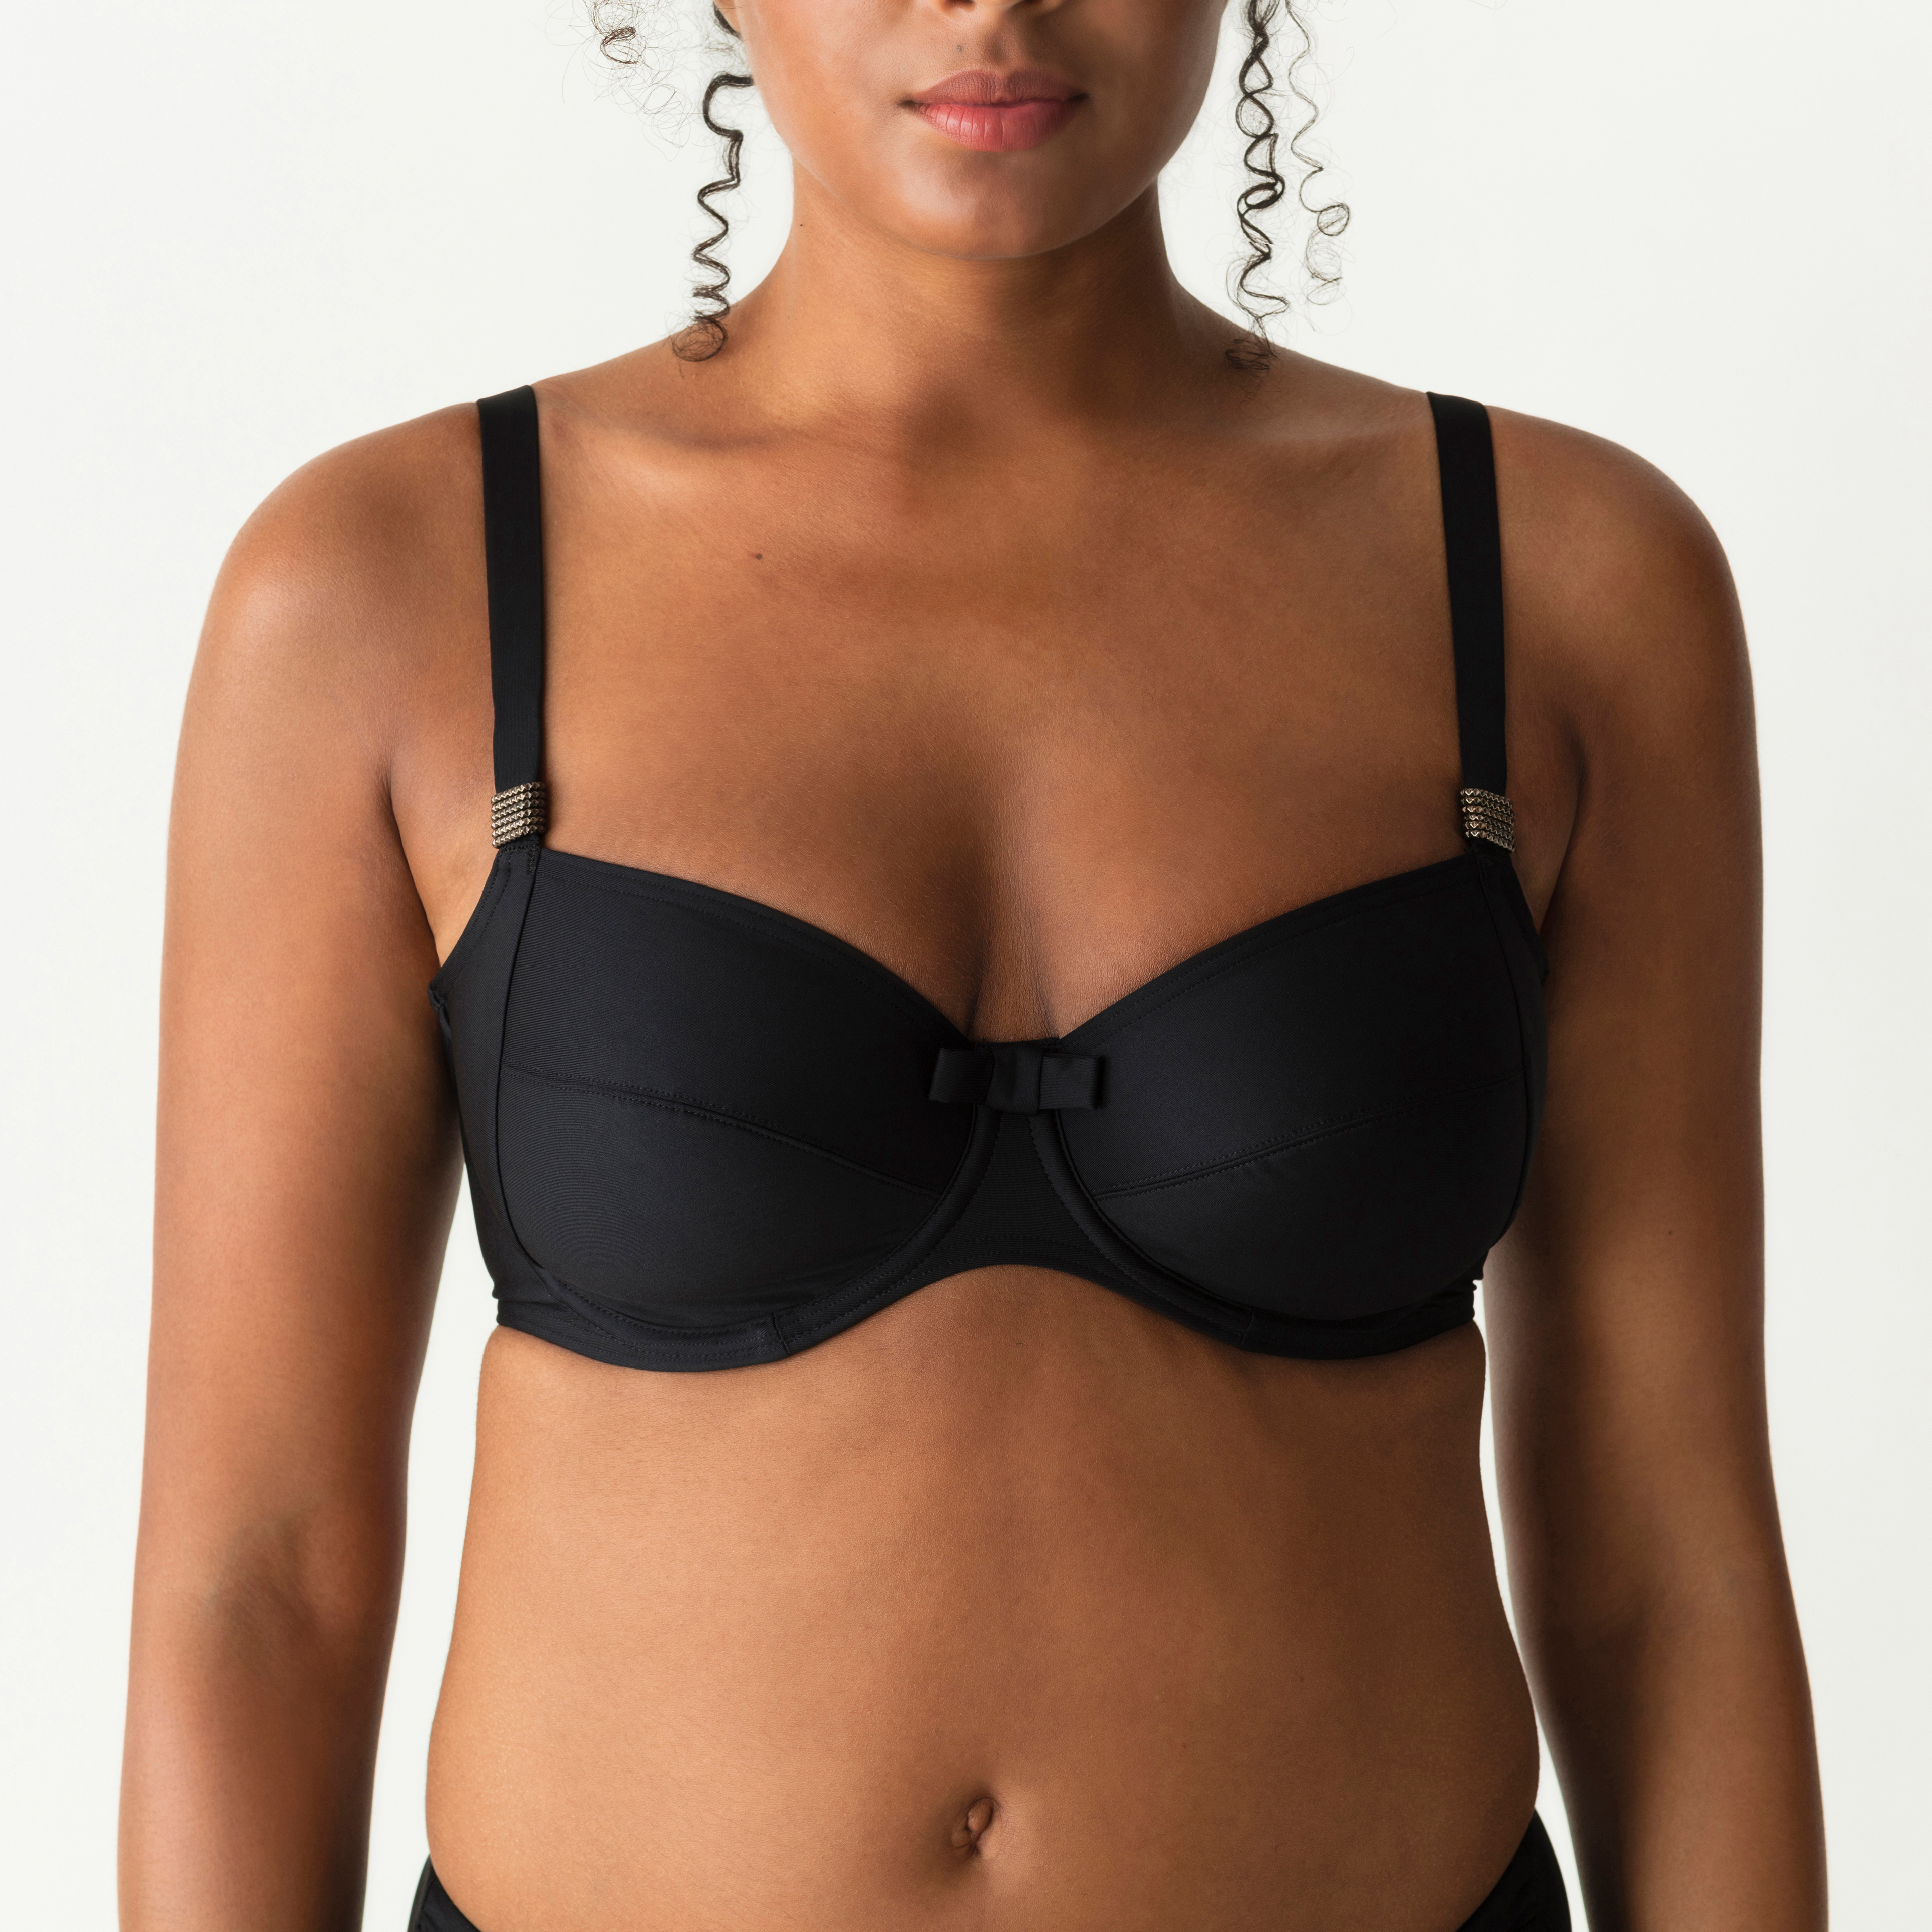 Doe mijn best gaan beslissen eenvoudig PrimaDonna Swim Cocktail Black bikini top full cup wire | PrimaDonna United  States